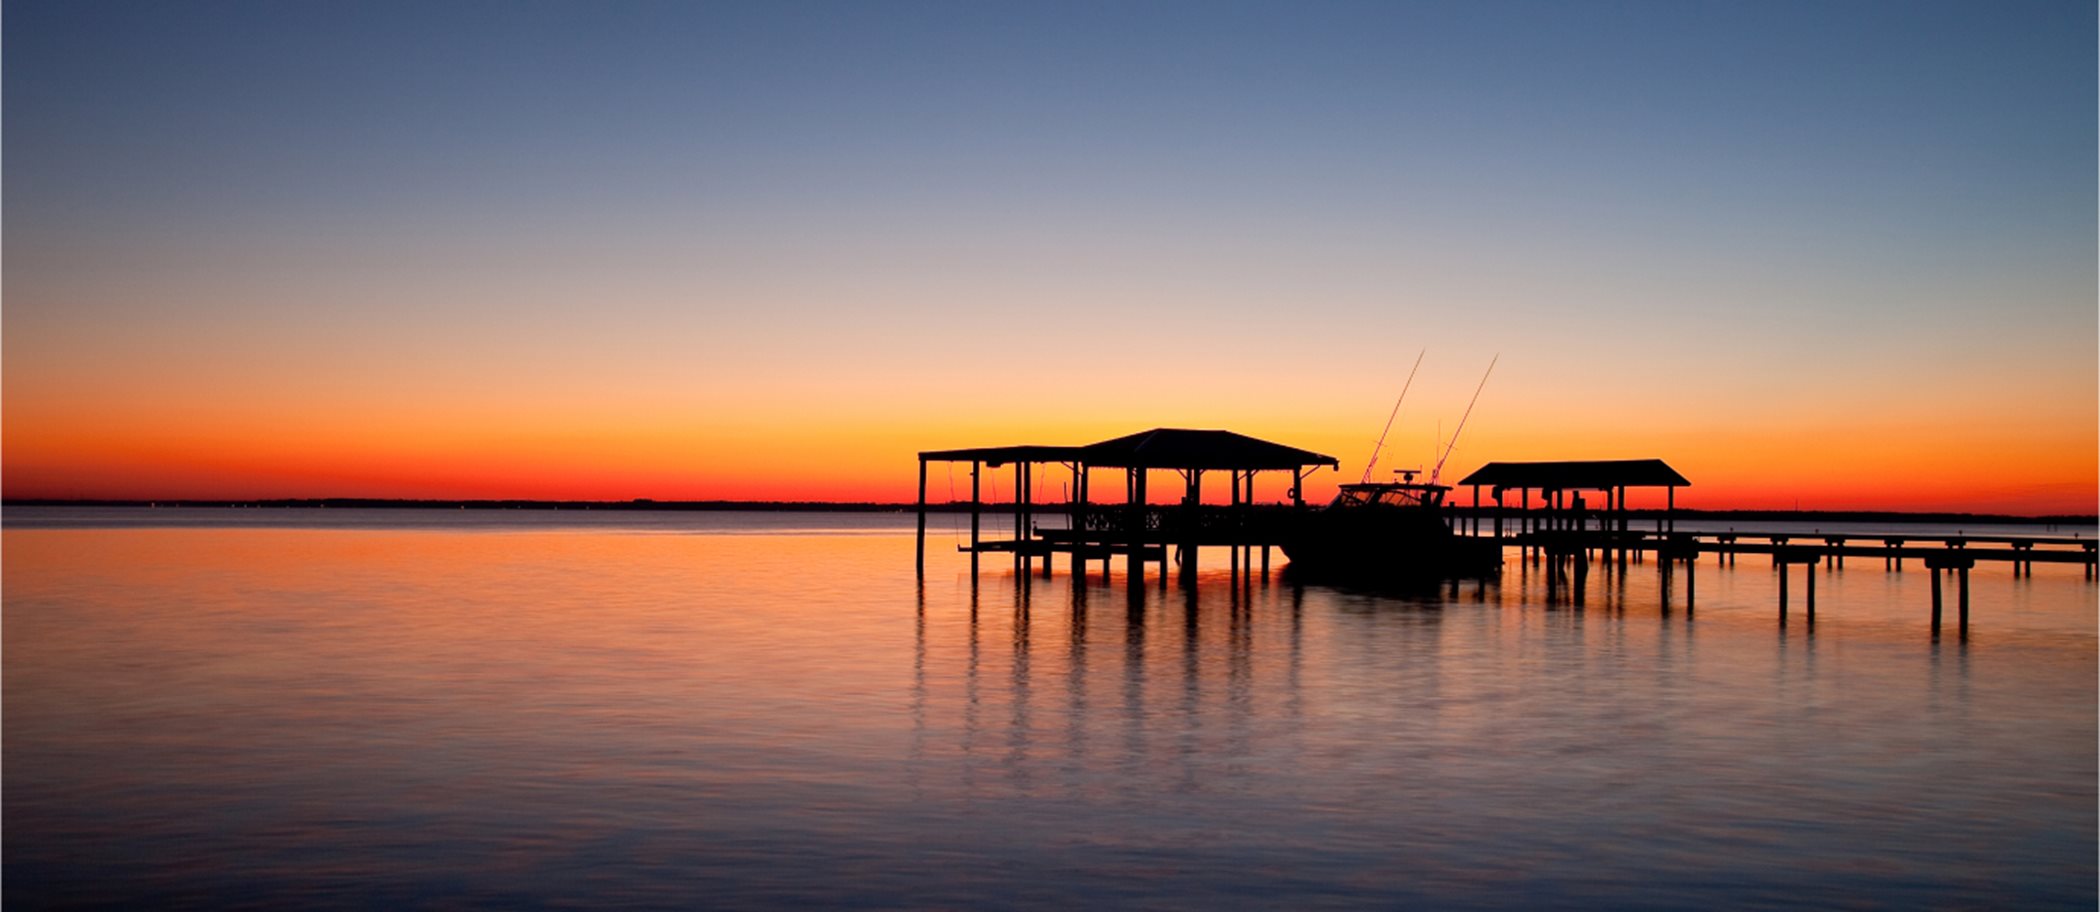 Boat at a dock at sunset